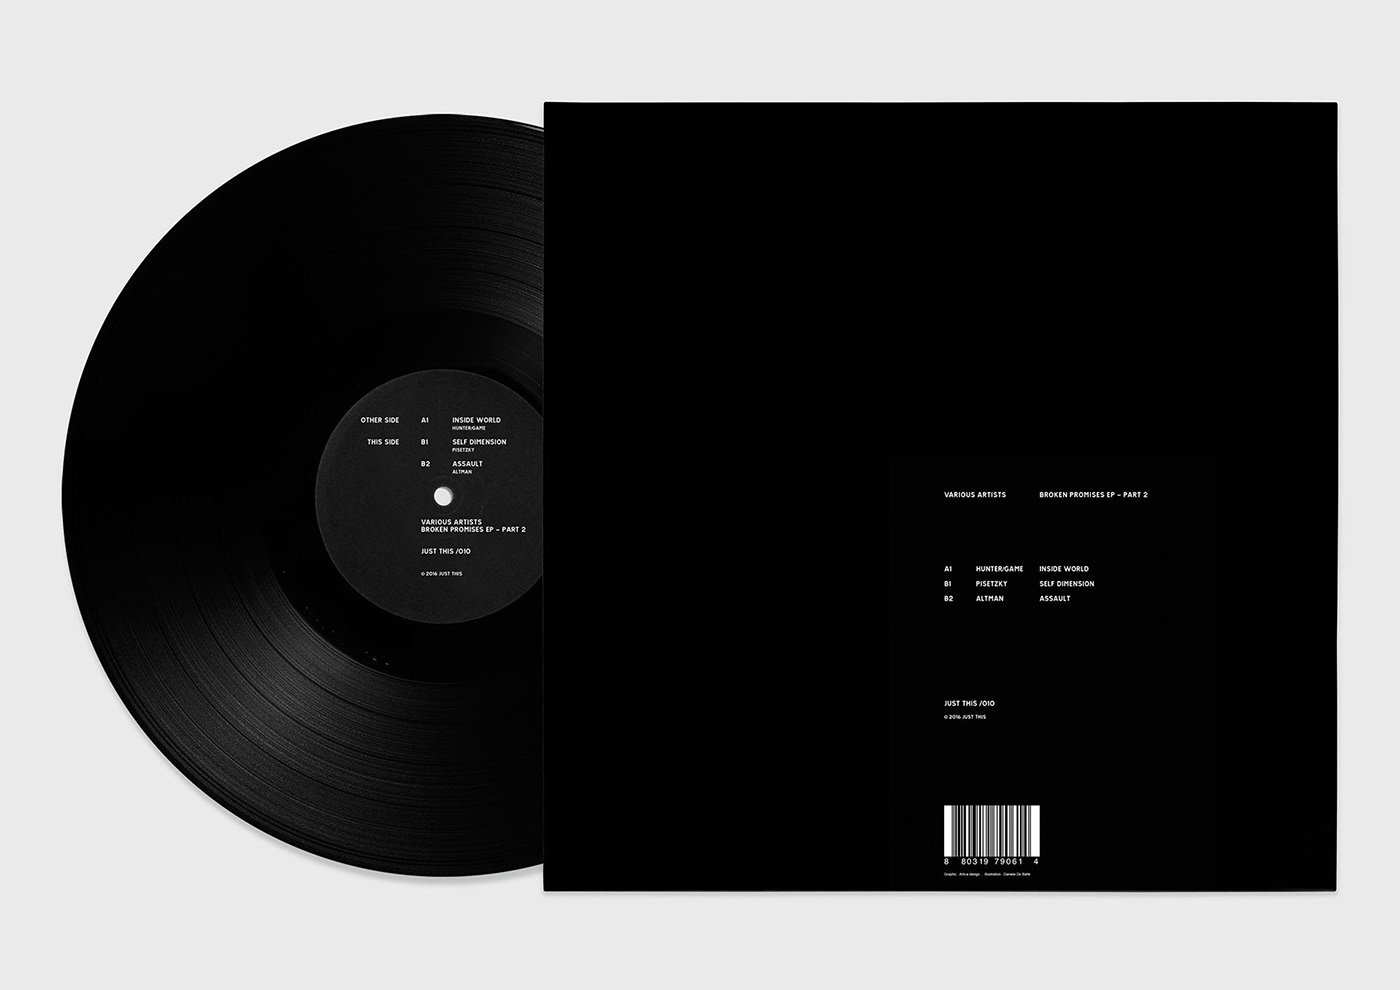 Album ep vinyl double White black artwork design ILLUSTRATION 